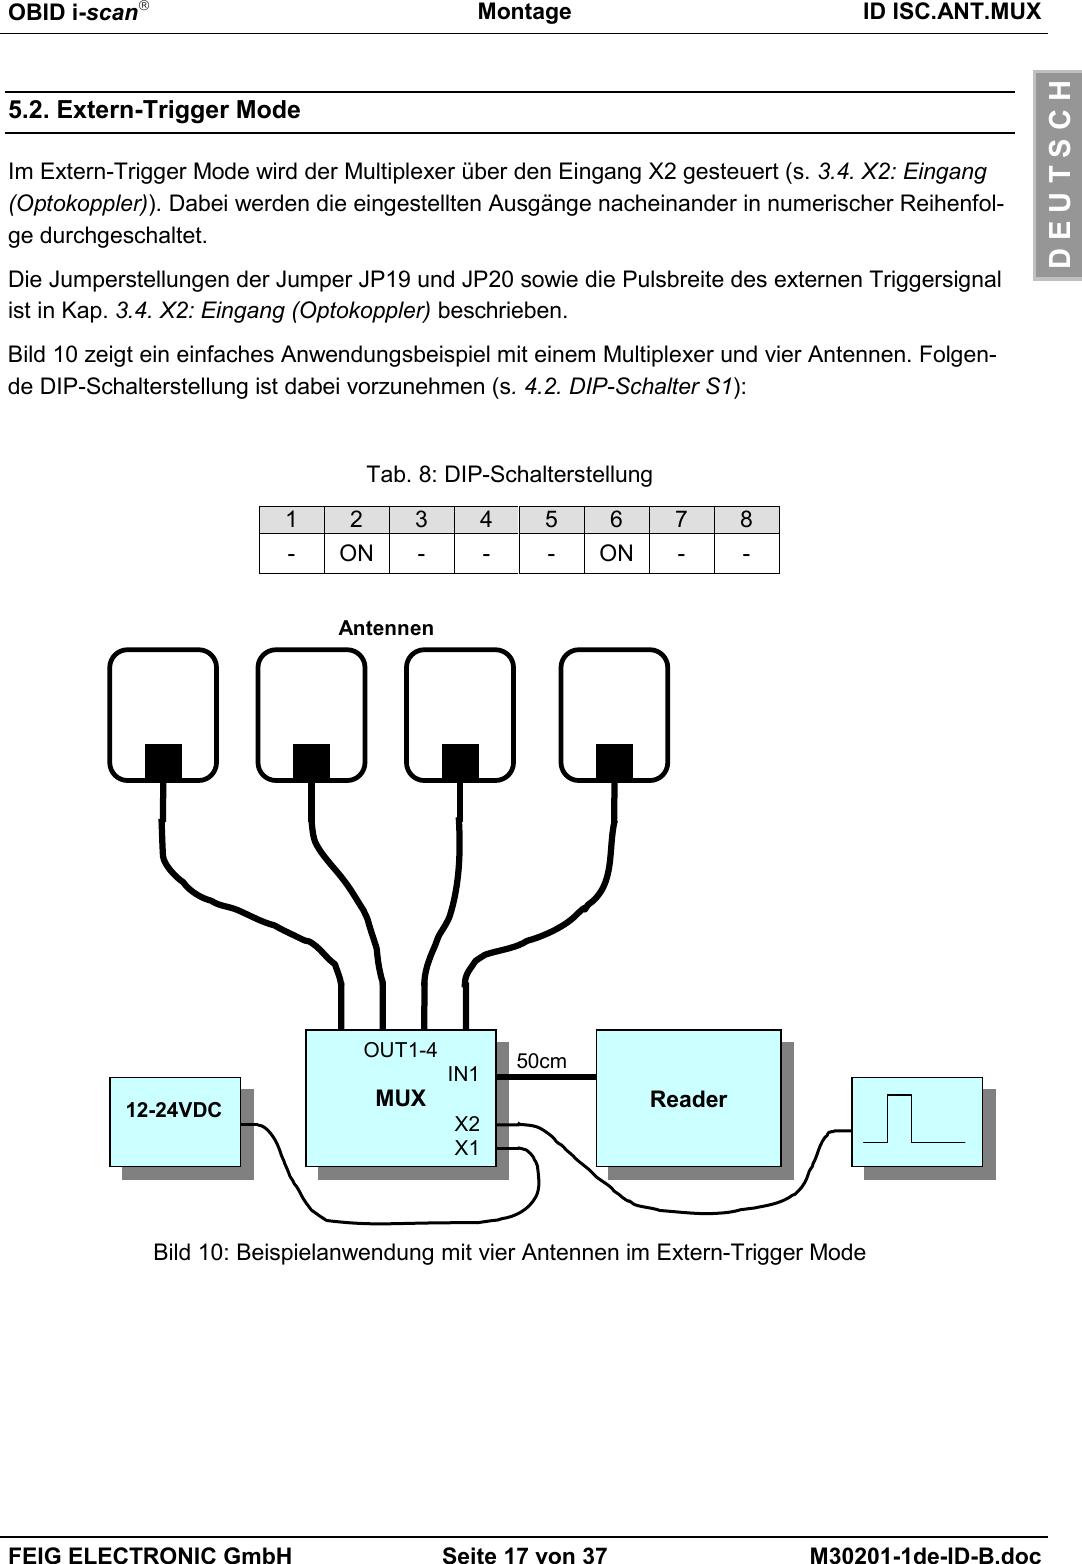 OBID i-scanMontage ID ISC.ANT.MUXFEIG ELECTRONIC GmbH Seite 17 von 37 M30201-1de-ID-B.docD E U T S C H5.2. Extern-Trigger ModeIm Extern-Trigger Mode wird der Multiplexer über den Eingang X2 gesteuert (s. 3.4. X2: Eingang(Optokoppler)). Dabei werden die eingestellten Ausgänge nacheinander in numerischer Reihenfol-ge durchgeschaltet.Die Jumperstellungen der Jumper JP19 und JP20 sowie die Pulsbreite des externen Triggersignalist in Kap. 3.4. X2: Eingang (Optokoppler) beschrieben.Bild 10 zeigt ein einfaches Anwendungsbeispiel mit einem Multiplexer und vier Antennen. Folgen-de DIP-Schalterstellung ist dabei vorzunehmen (s. 4.2. DIP-Schalter S1):Tab. 8: DIP-Schalterstellung12345678-ON---ON--Bild 10: Beispielanwendung mit vier Antennen im Extern-Trigger ModeReaderOUT1-4IN1MUXX2X150cmAntennen12-24VDC